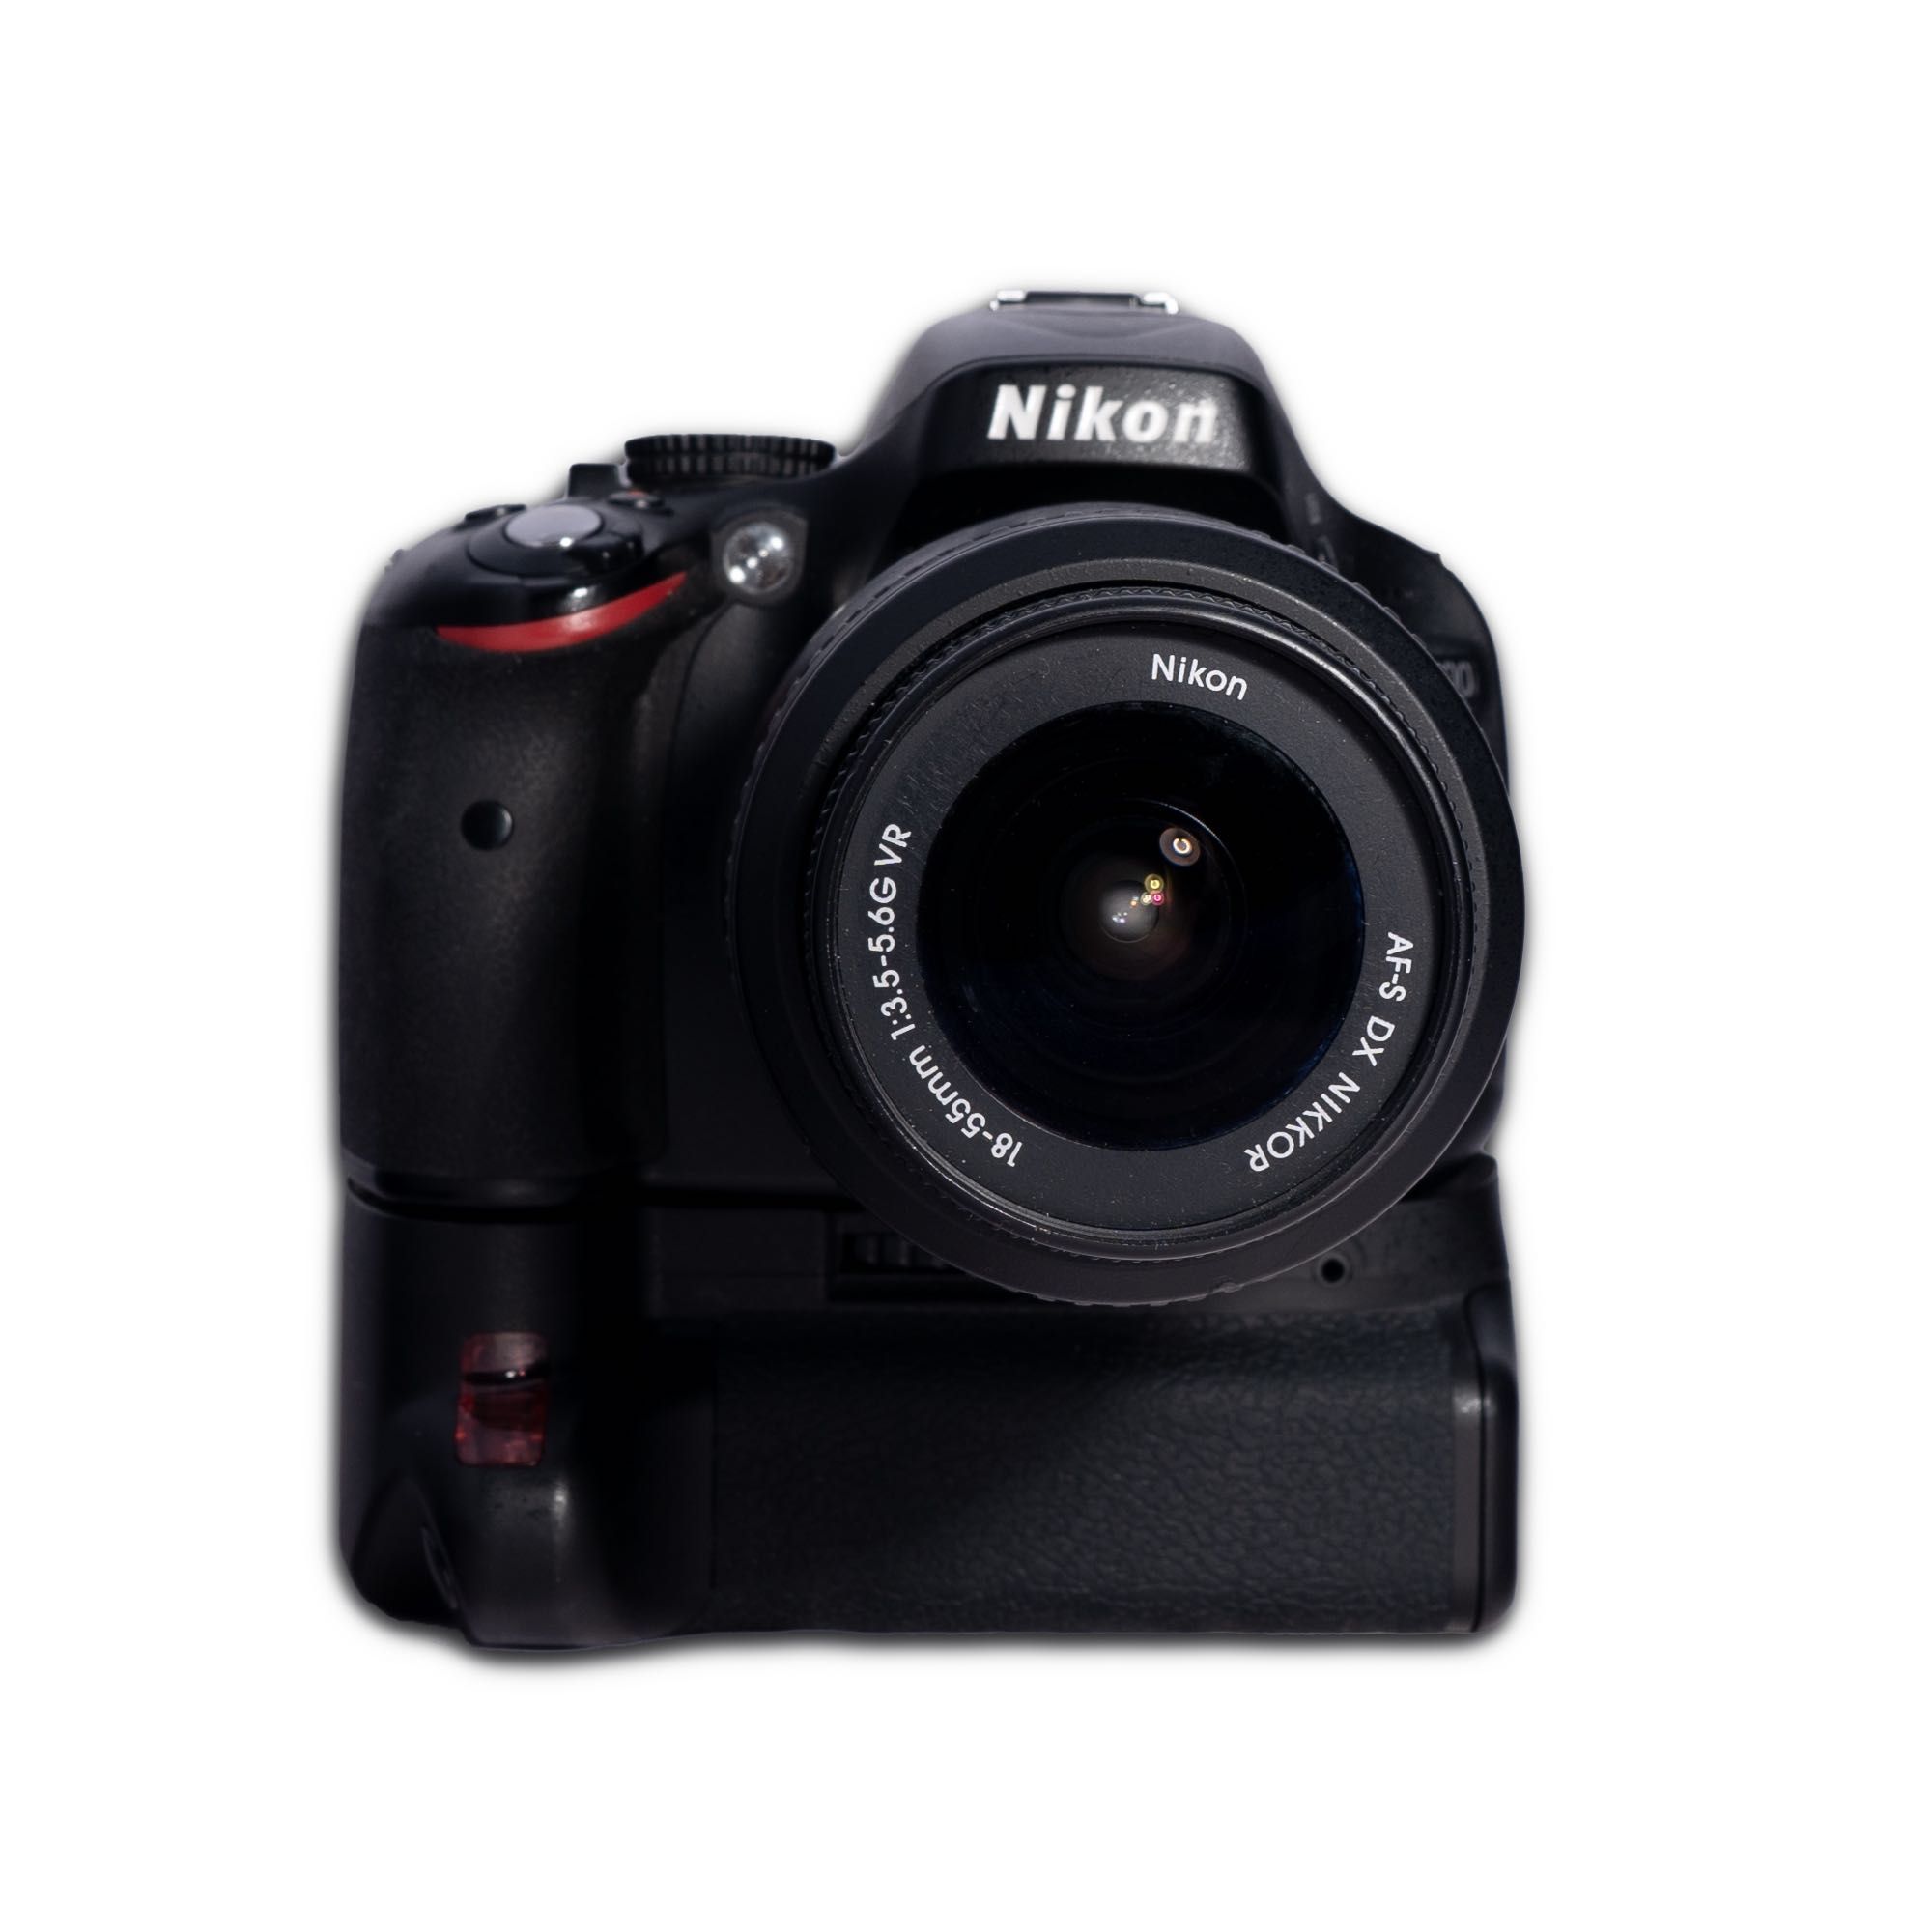 Aparat Nikon D5100 + Nikkor 18-55mm + Grip